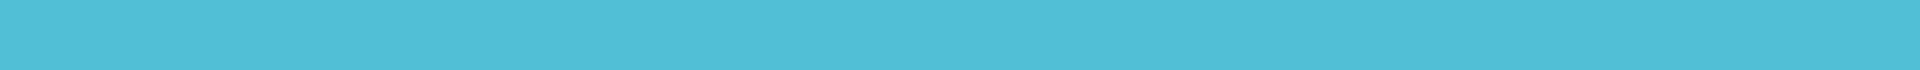 Бордюр настенный  Универсальный бордюр Glass border turquoise (стекло)